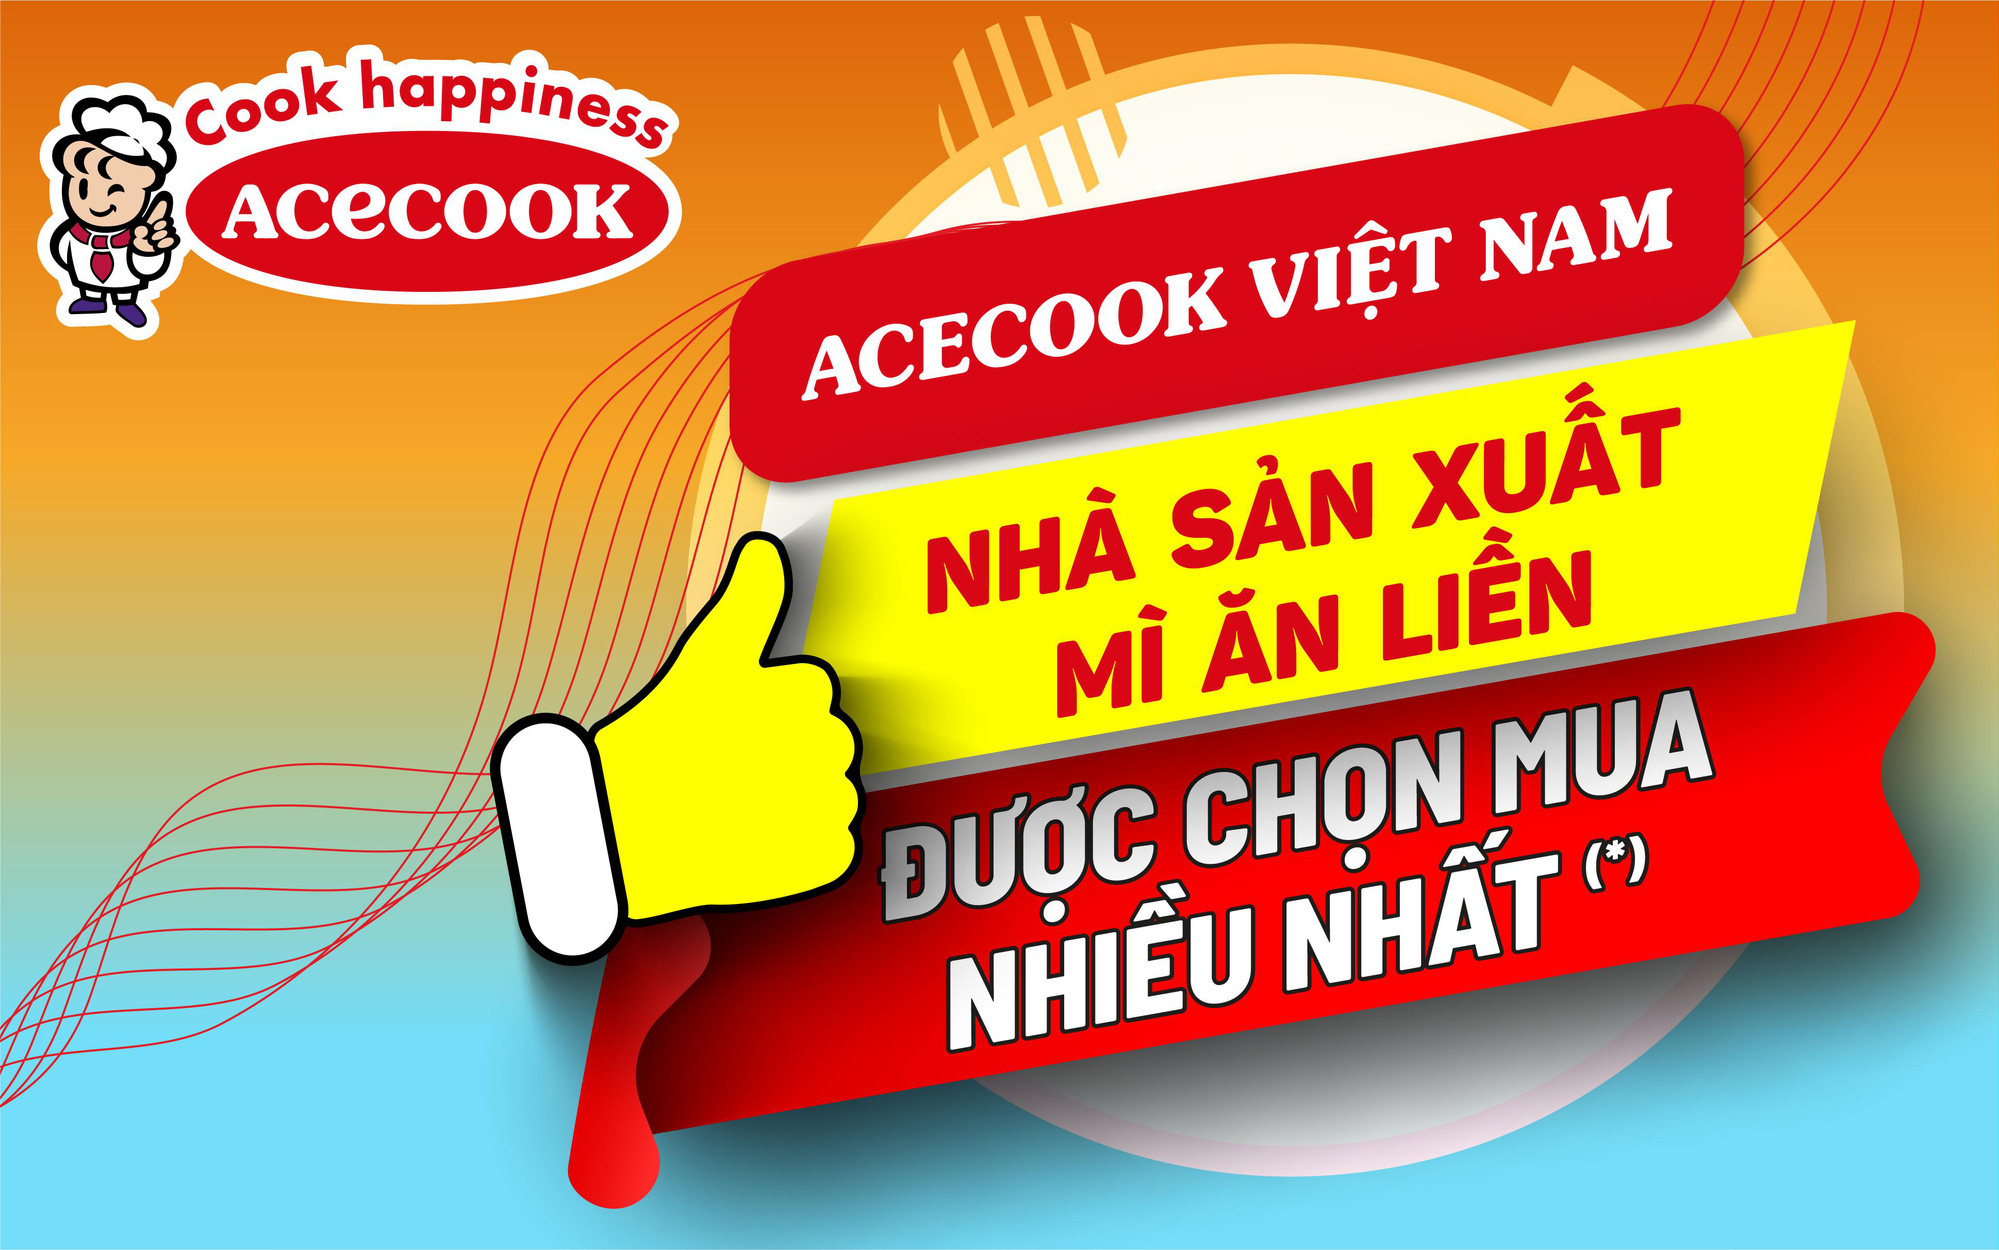 “Nhà sản xuất mì ăn liền được chọn mua nhiều nhất” thuộc về Acecook Việt Nam - công ty gắn bó 25 năm với người tiêu dùng Việt